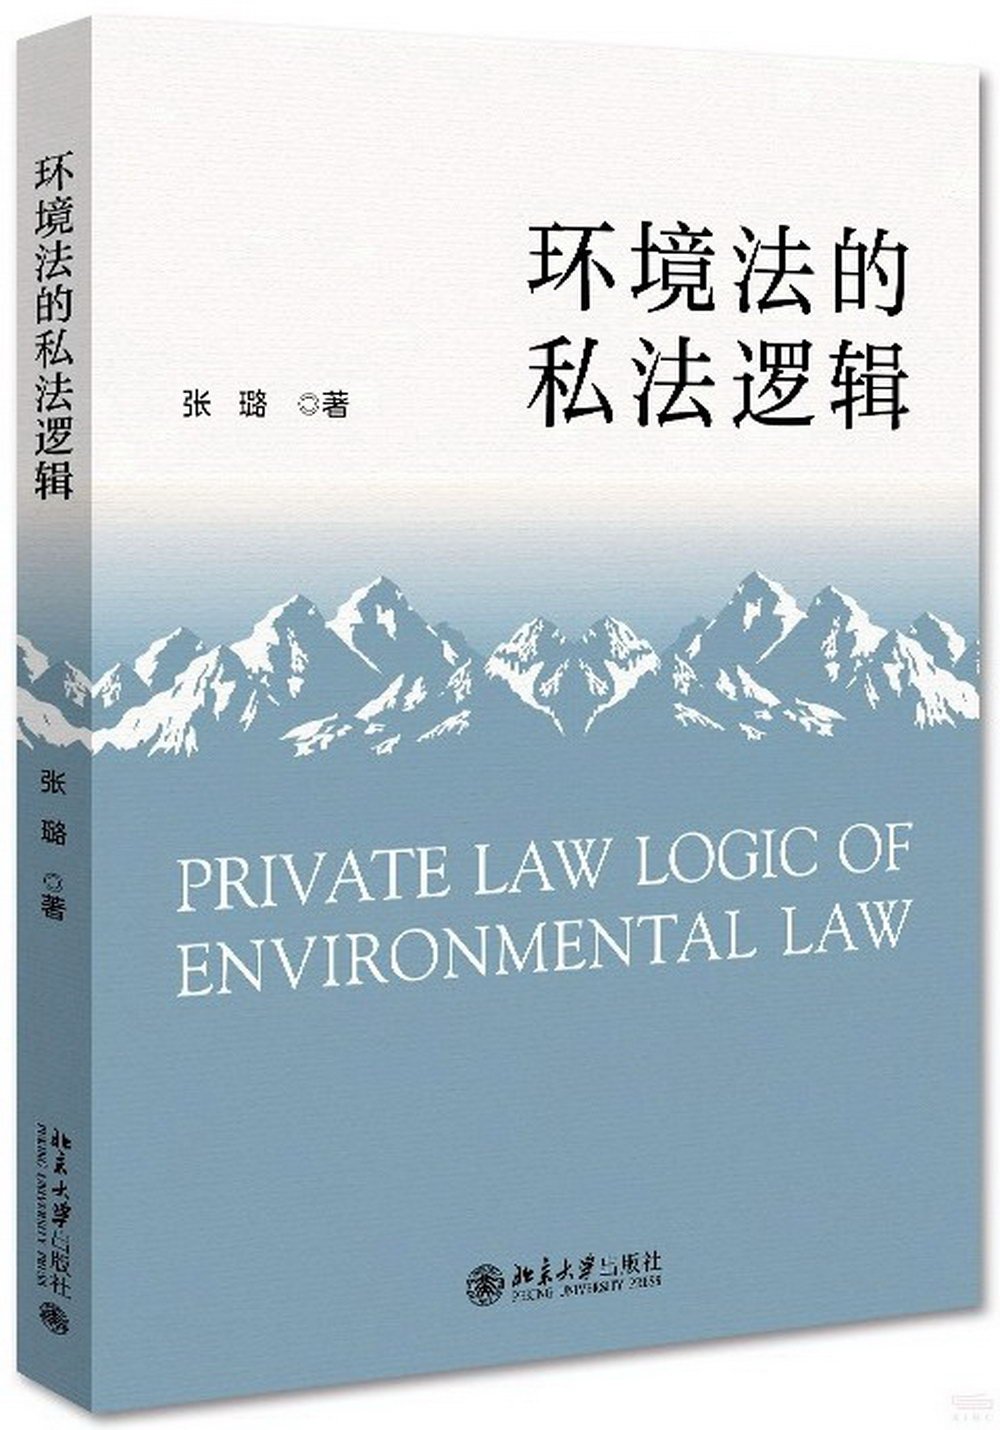 環境法的私法邏輯